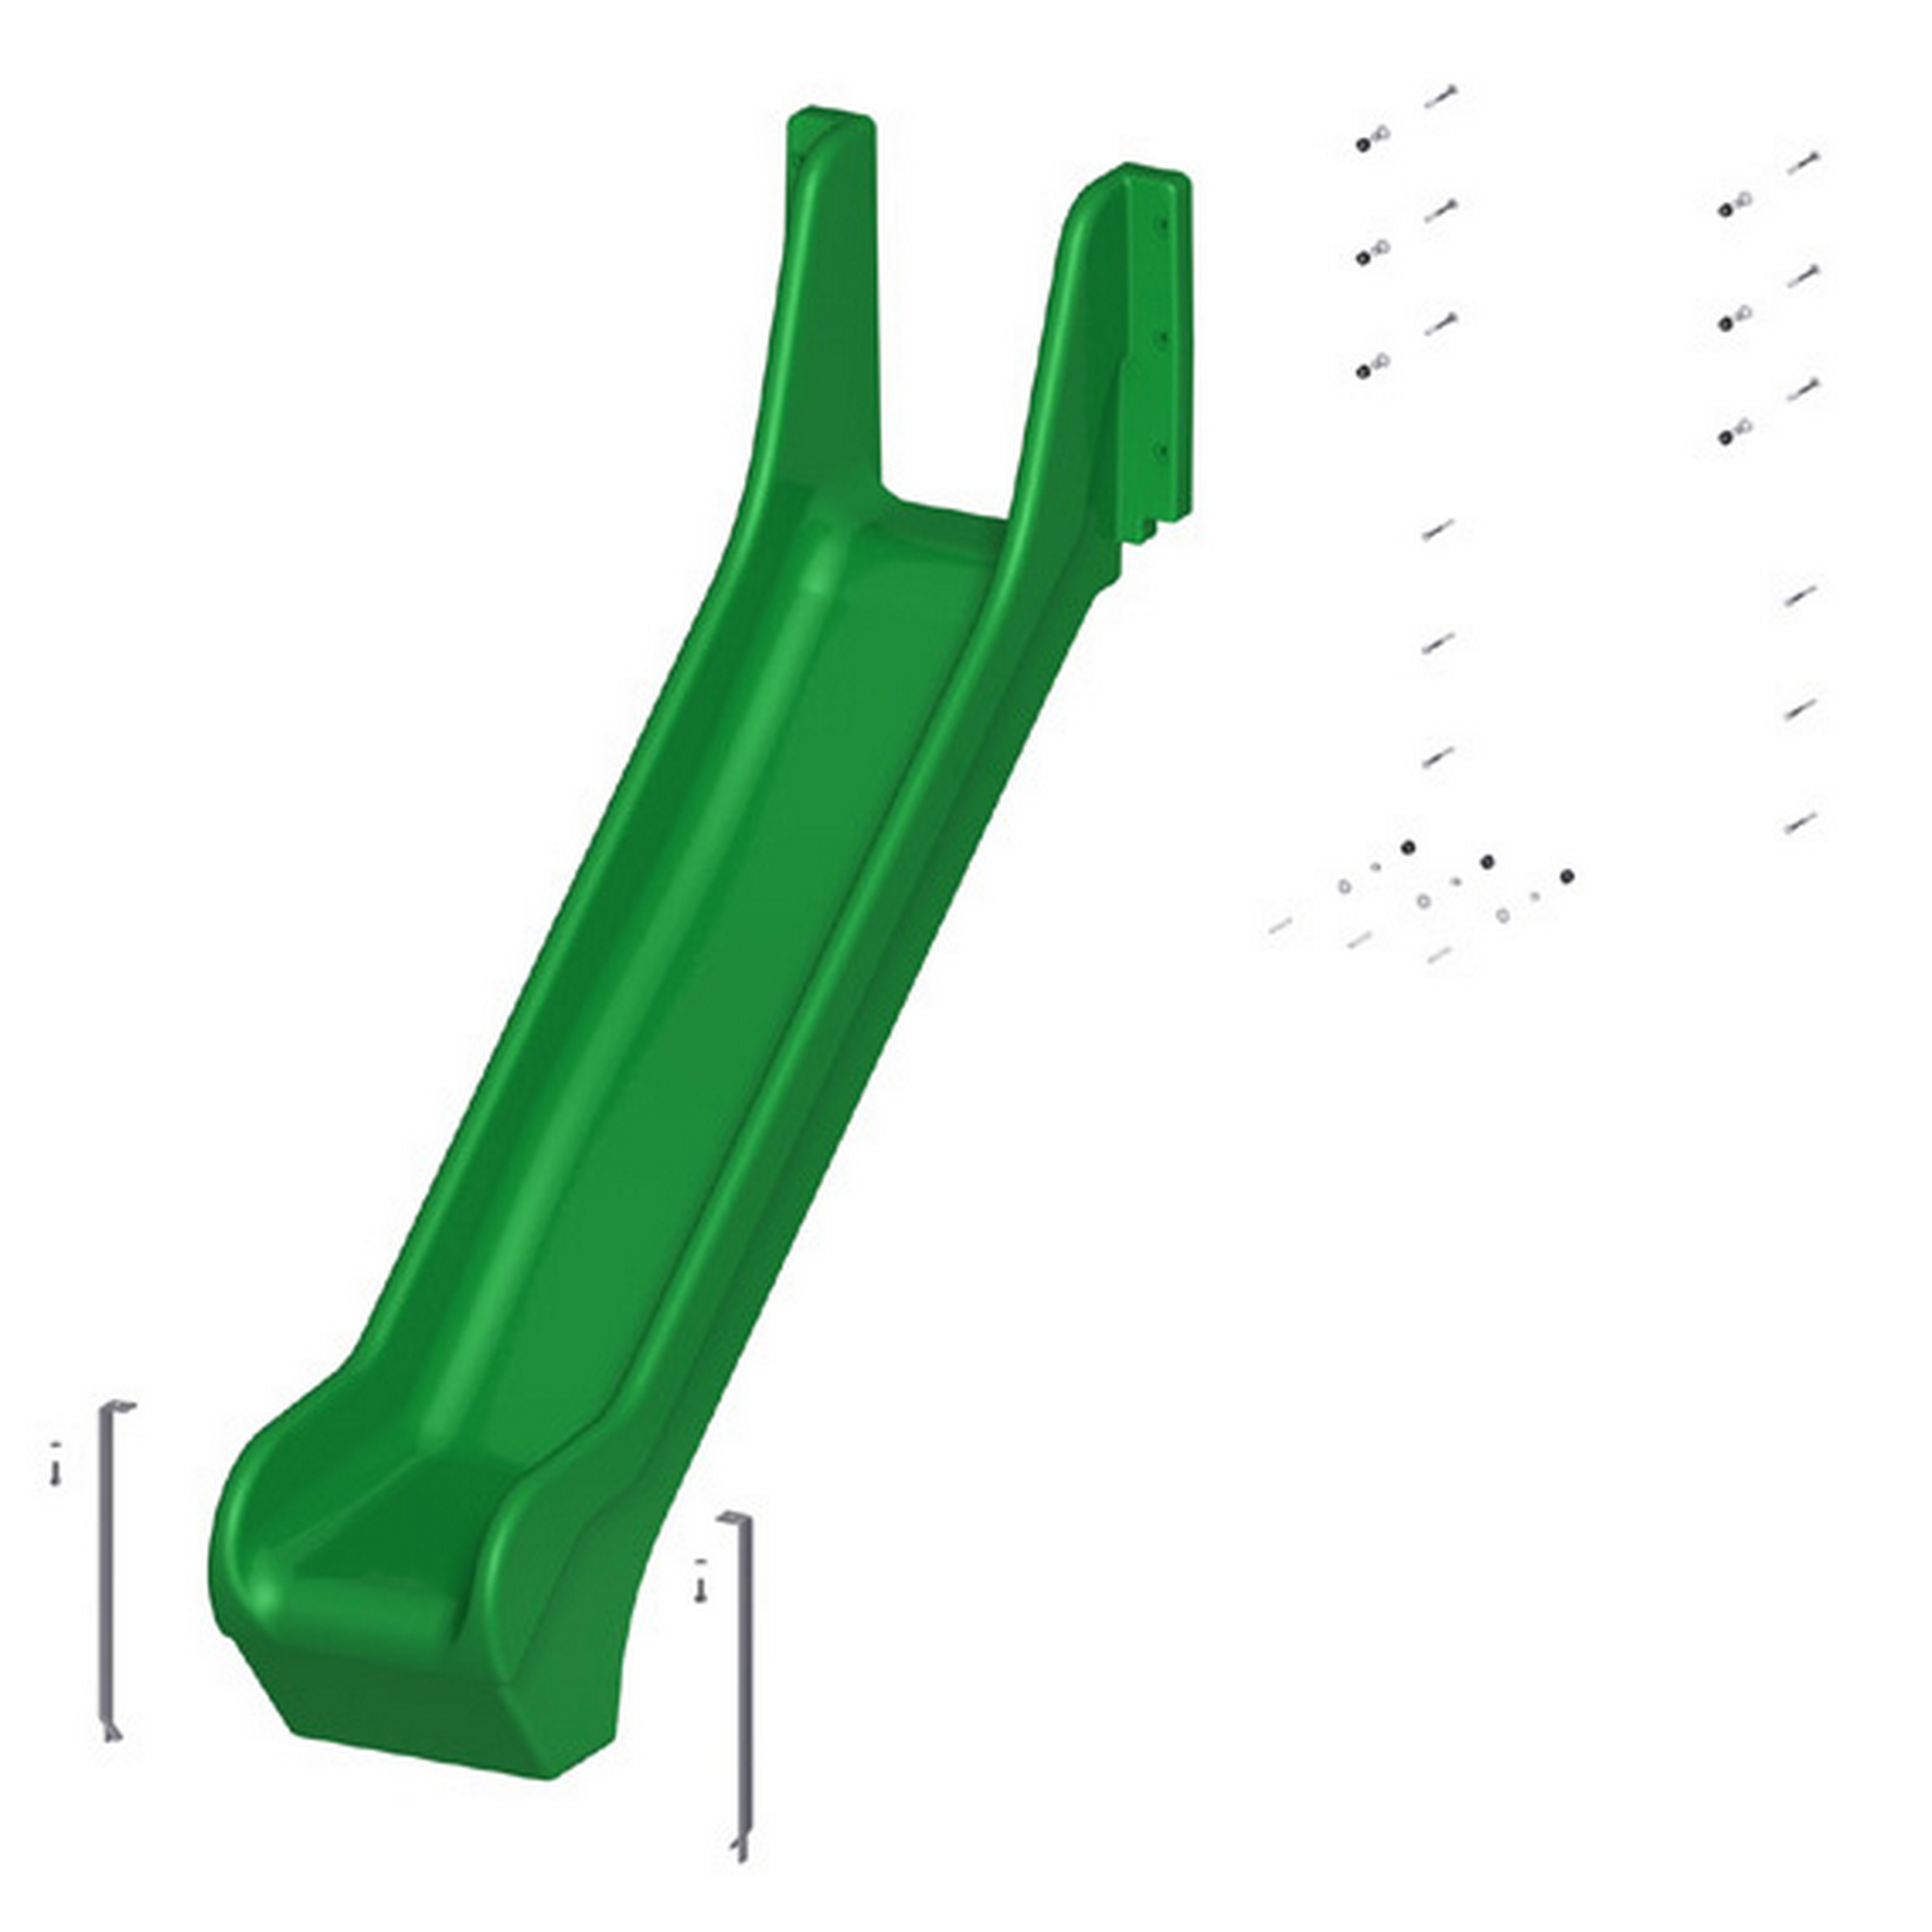 Kunststoffrutsche 'Winnetoo Pro' grün 233 x 75 x 149 cm, ohne Zubehör + product picture